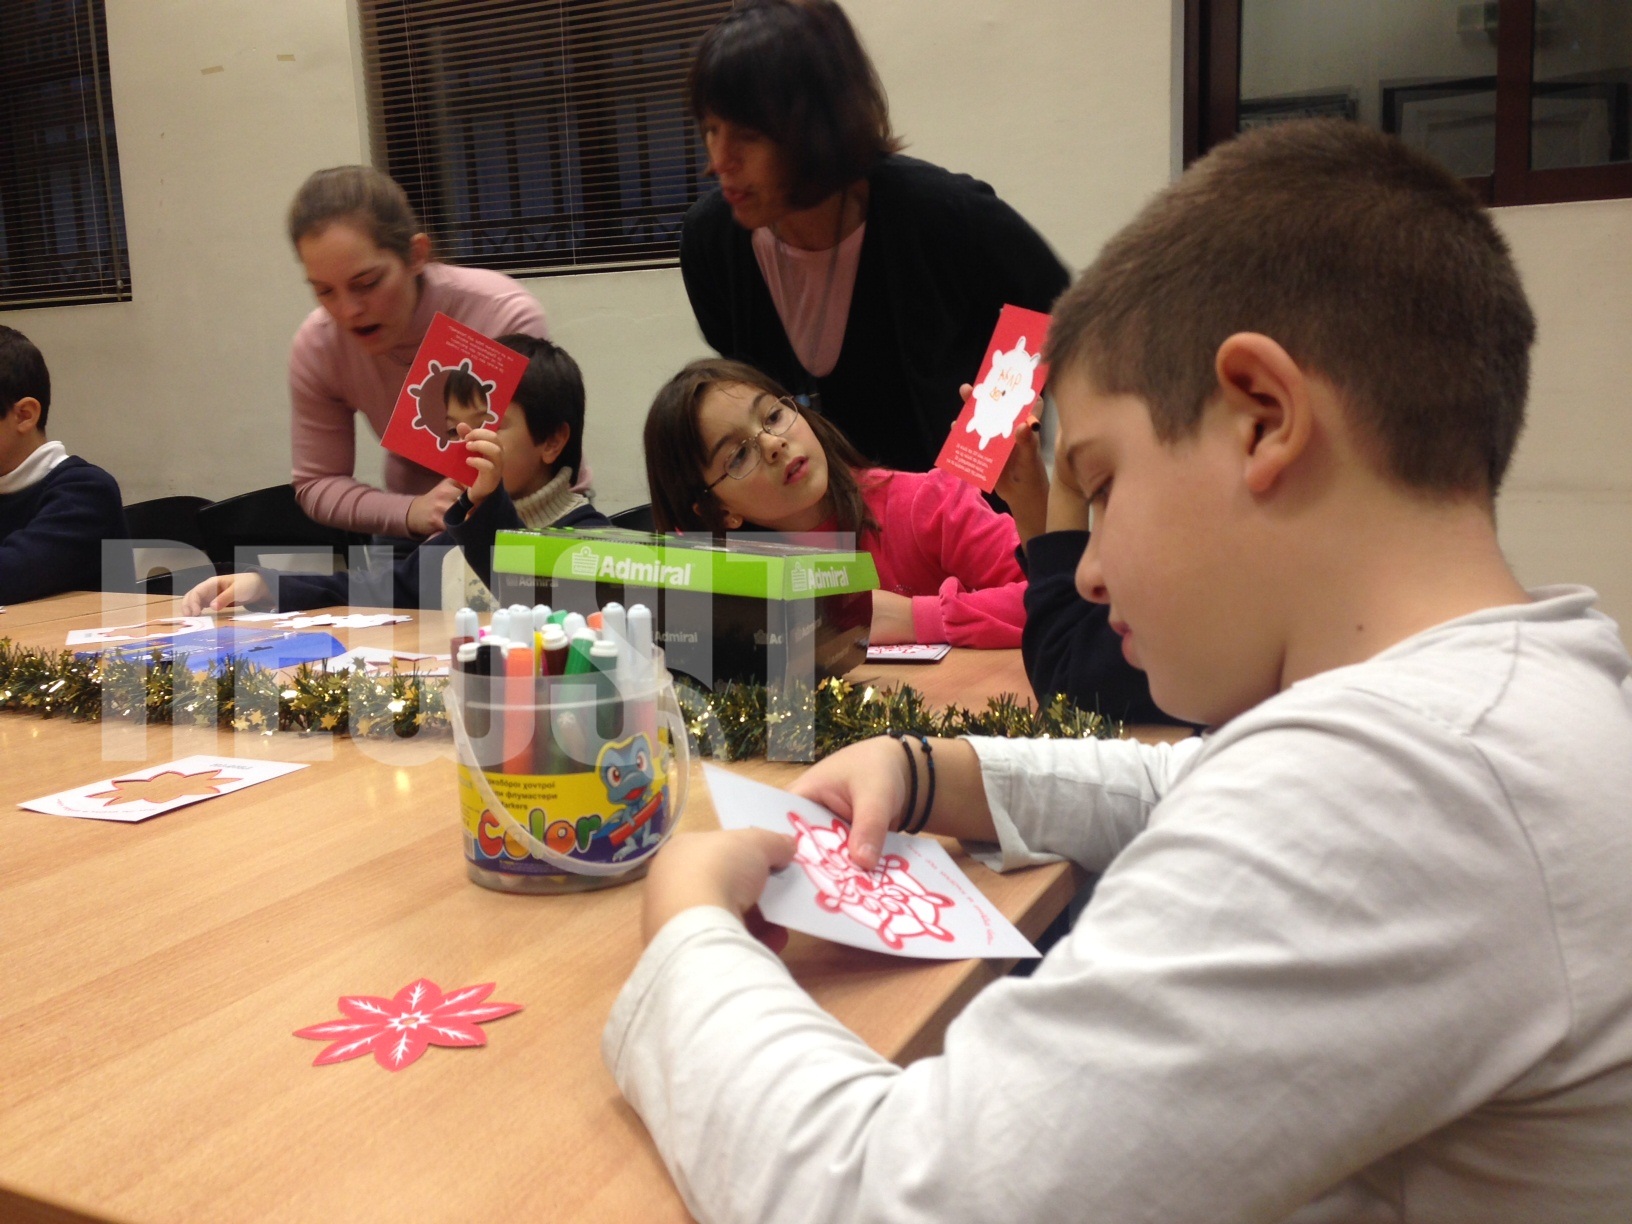 Τα παιδιά φτιάχνουν τις δικές τους κάρτες με ευχές - ΦΩΤΟ NEWSIT 